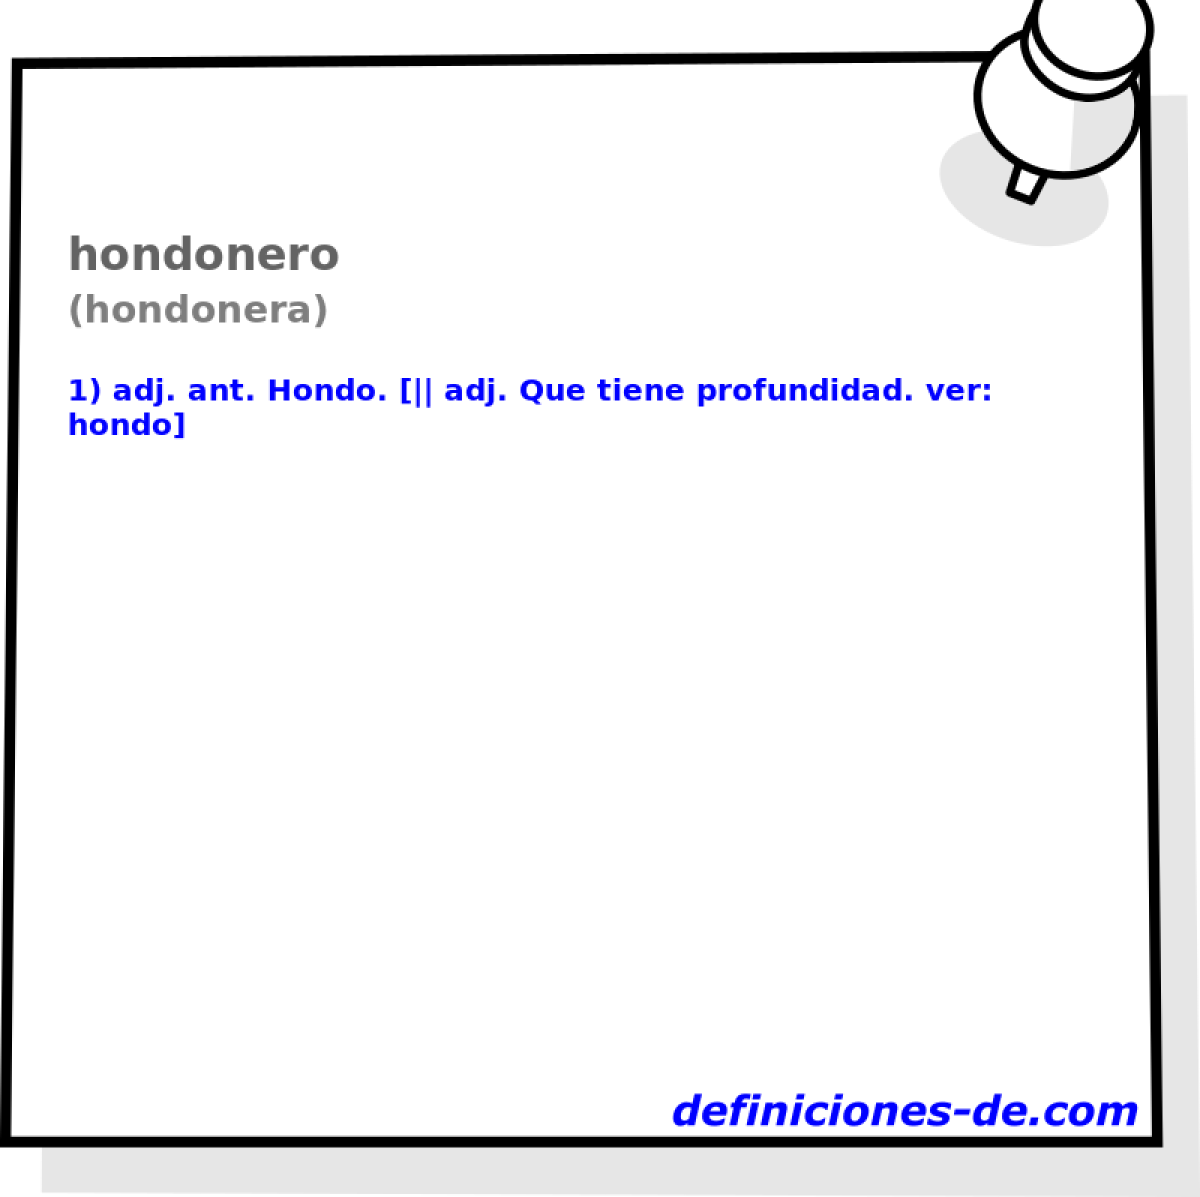 hondonero (hondonera)